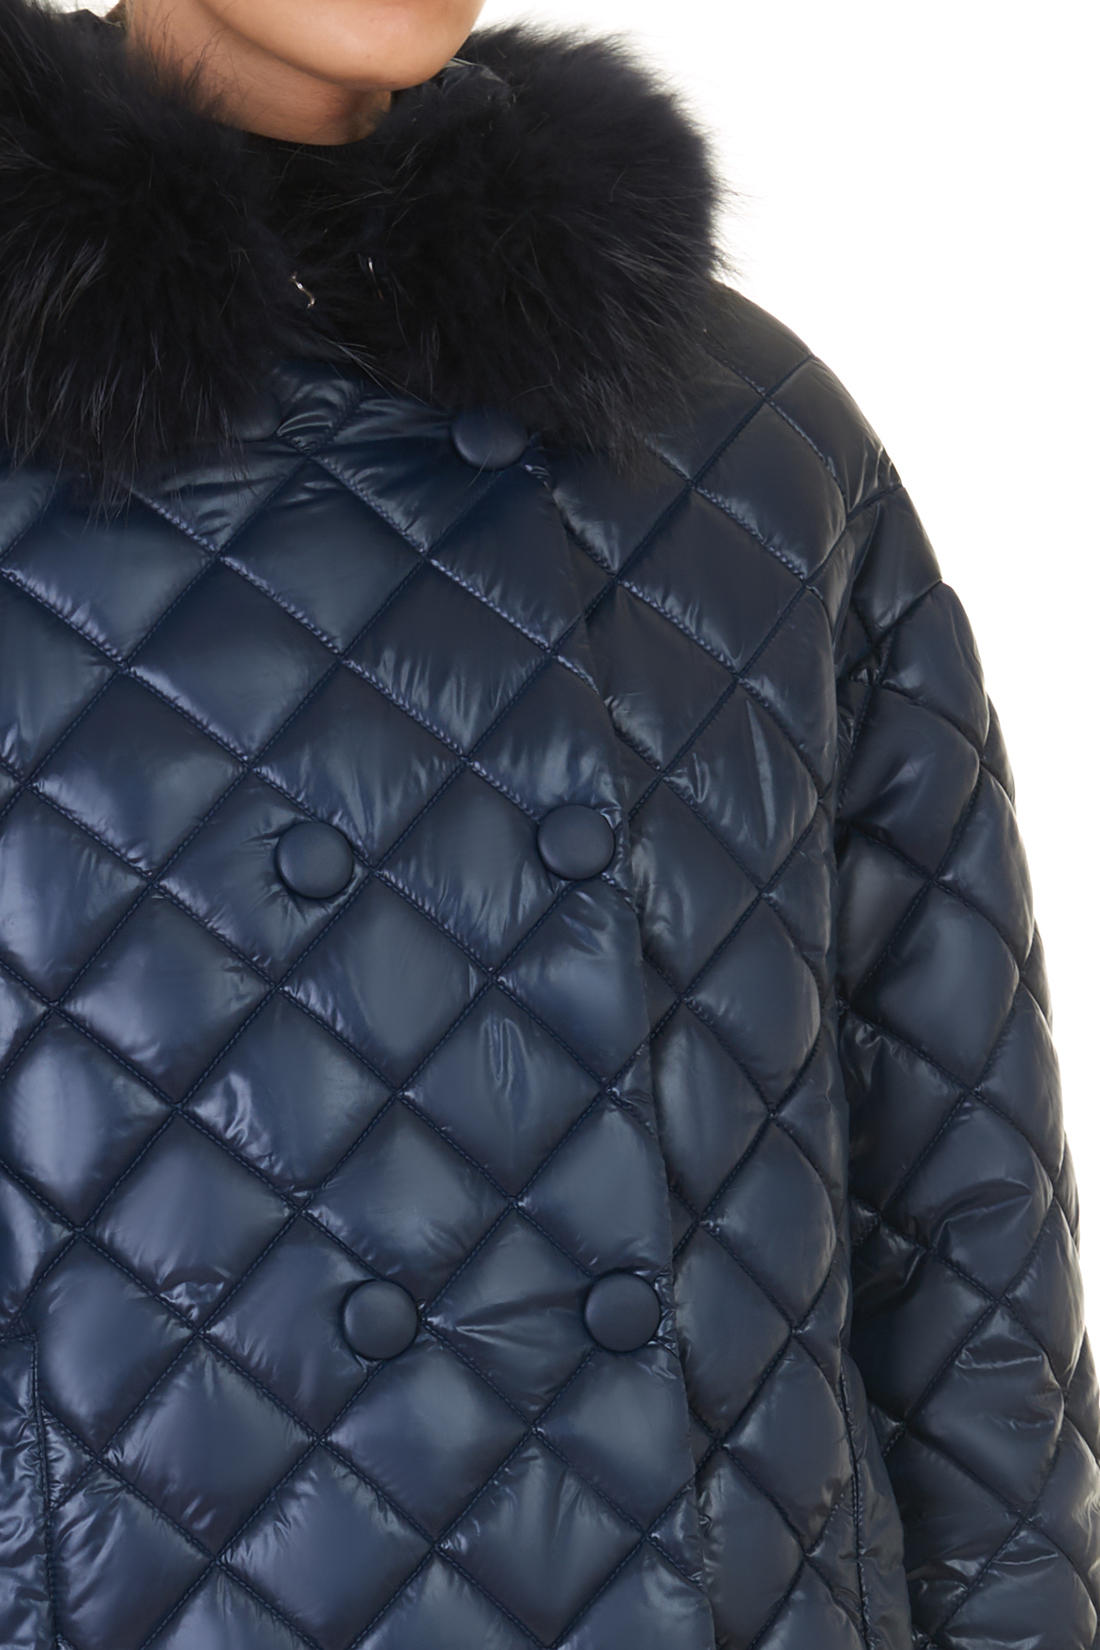 Куртка с меховым воротником и съёмными манжетами (арт. baon B037527), размер L, цвет синий Куртка с меховым воротником и съёмными манжетами (арт. baon B037527) - фото 4